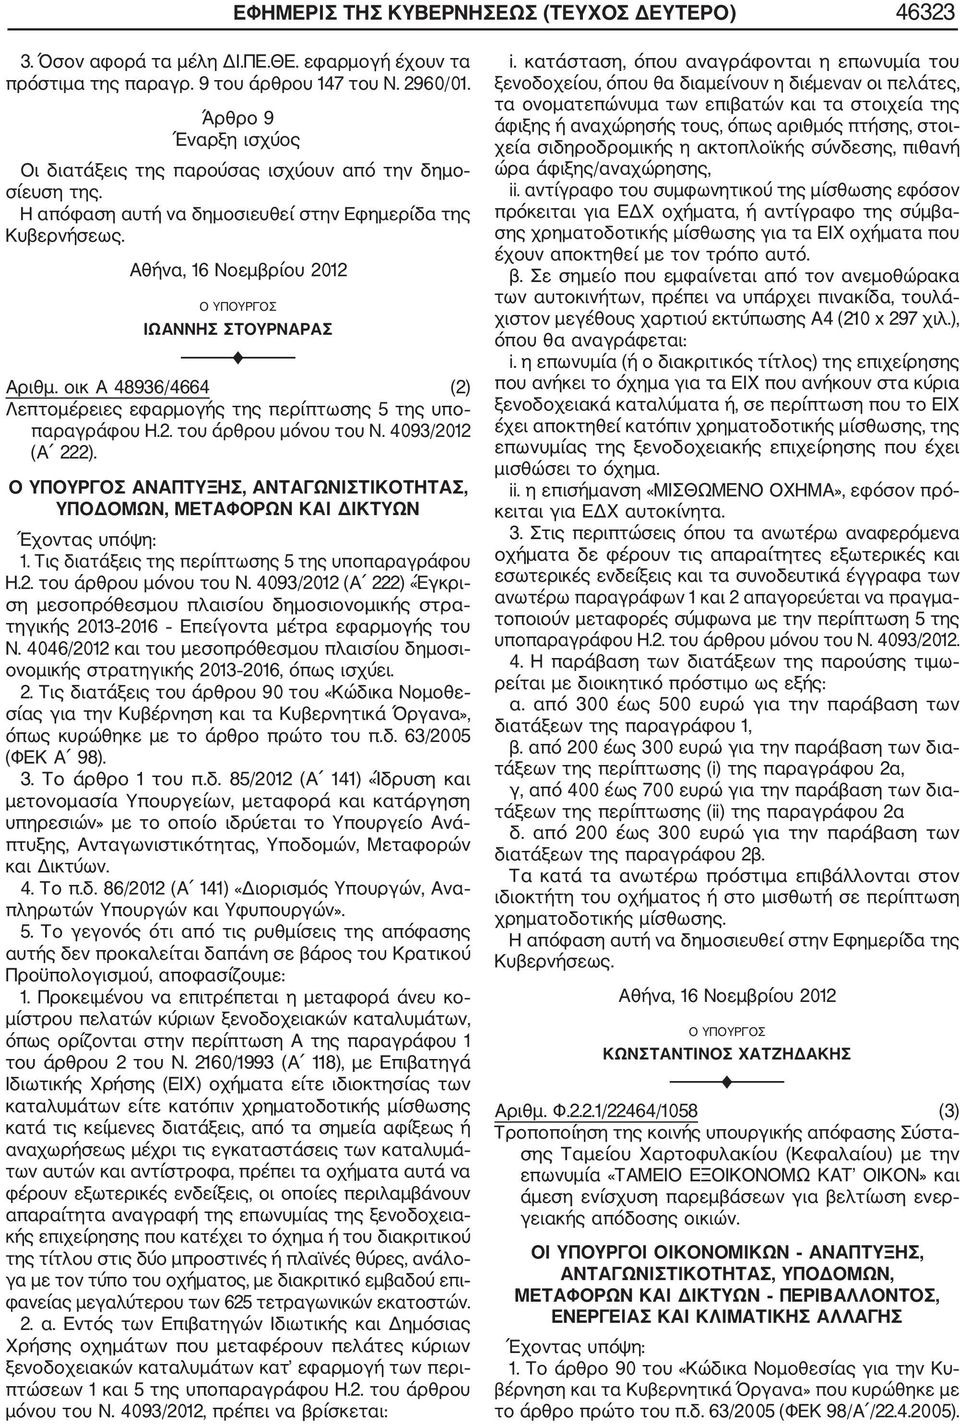 Αθήνα, 16 Νοεμβρίου 2012 Ο ΥΠΟΥΡΓΟΣ ΙΩΑΝΝΗΣ ΣΤΟΥΡΝΑΡΑΣ F Αριθμ. οικ Α 48936/4664 (2) Λεπτομέρειες εφαρμογής της περίπτωσης 5 της υπο παραγράφου Η.2. του άρθρου μόνου του Ν. 4093/2012 (Α 222).